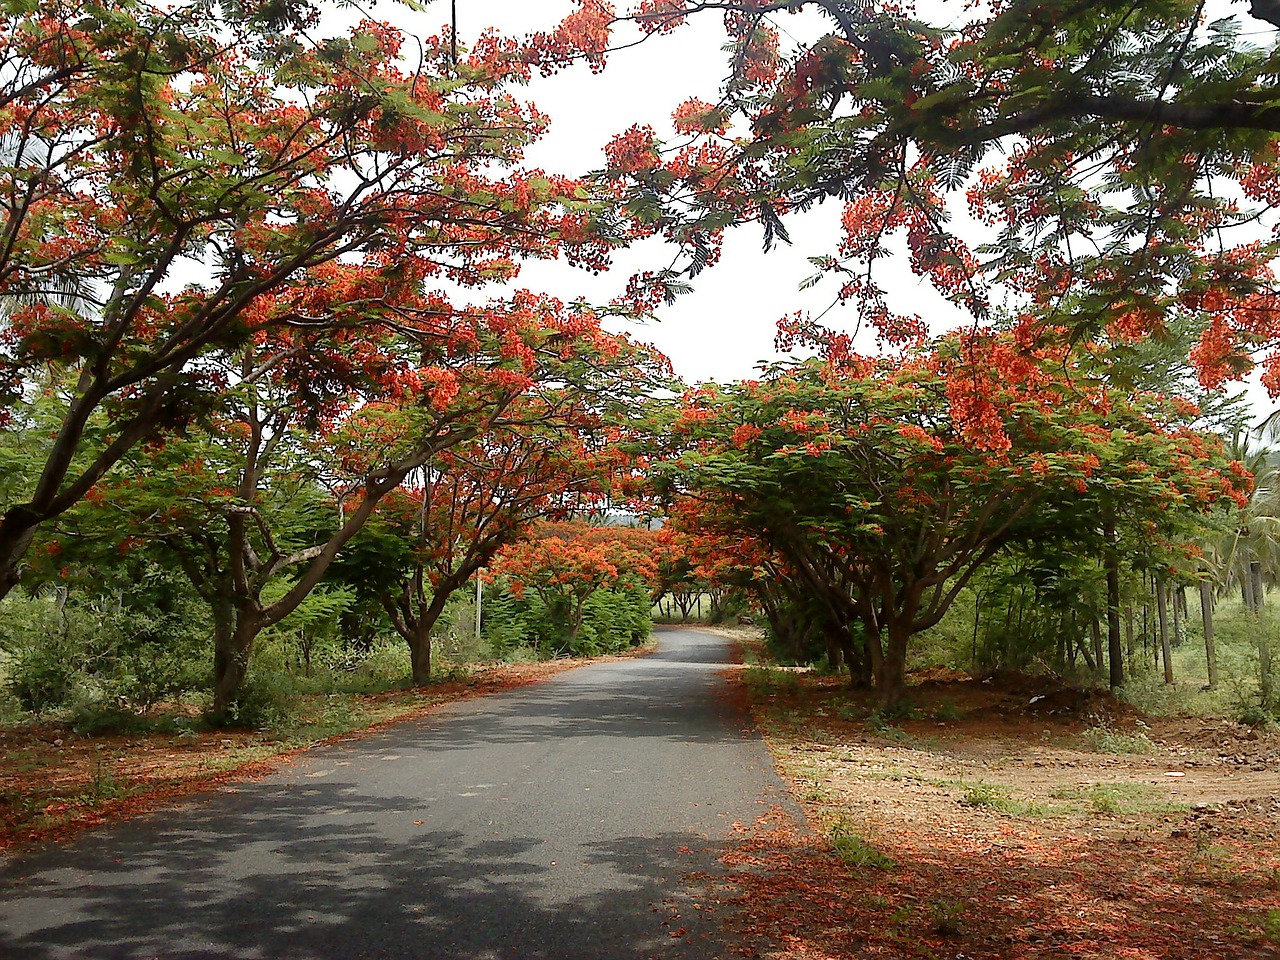 Hoa phượng vĩ đỏ trải dài con đường làng